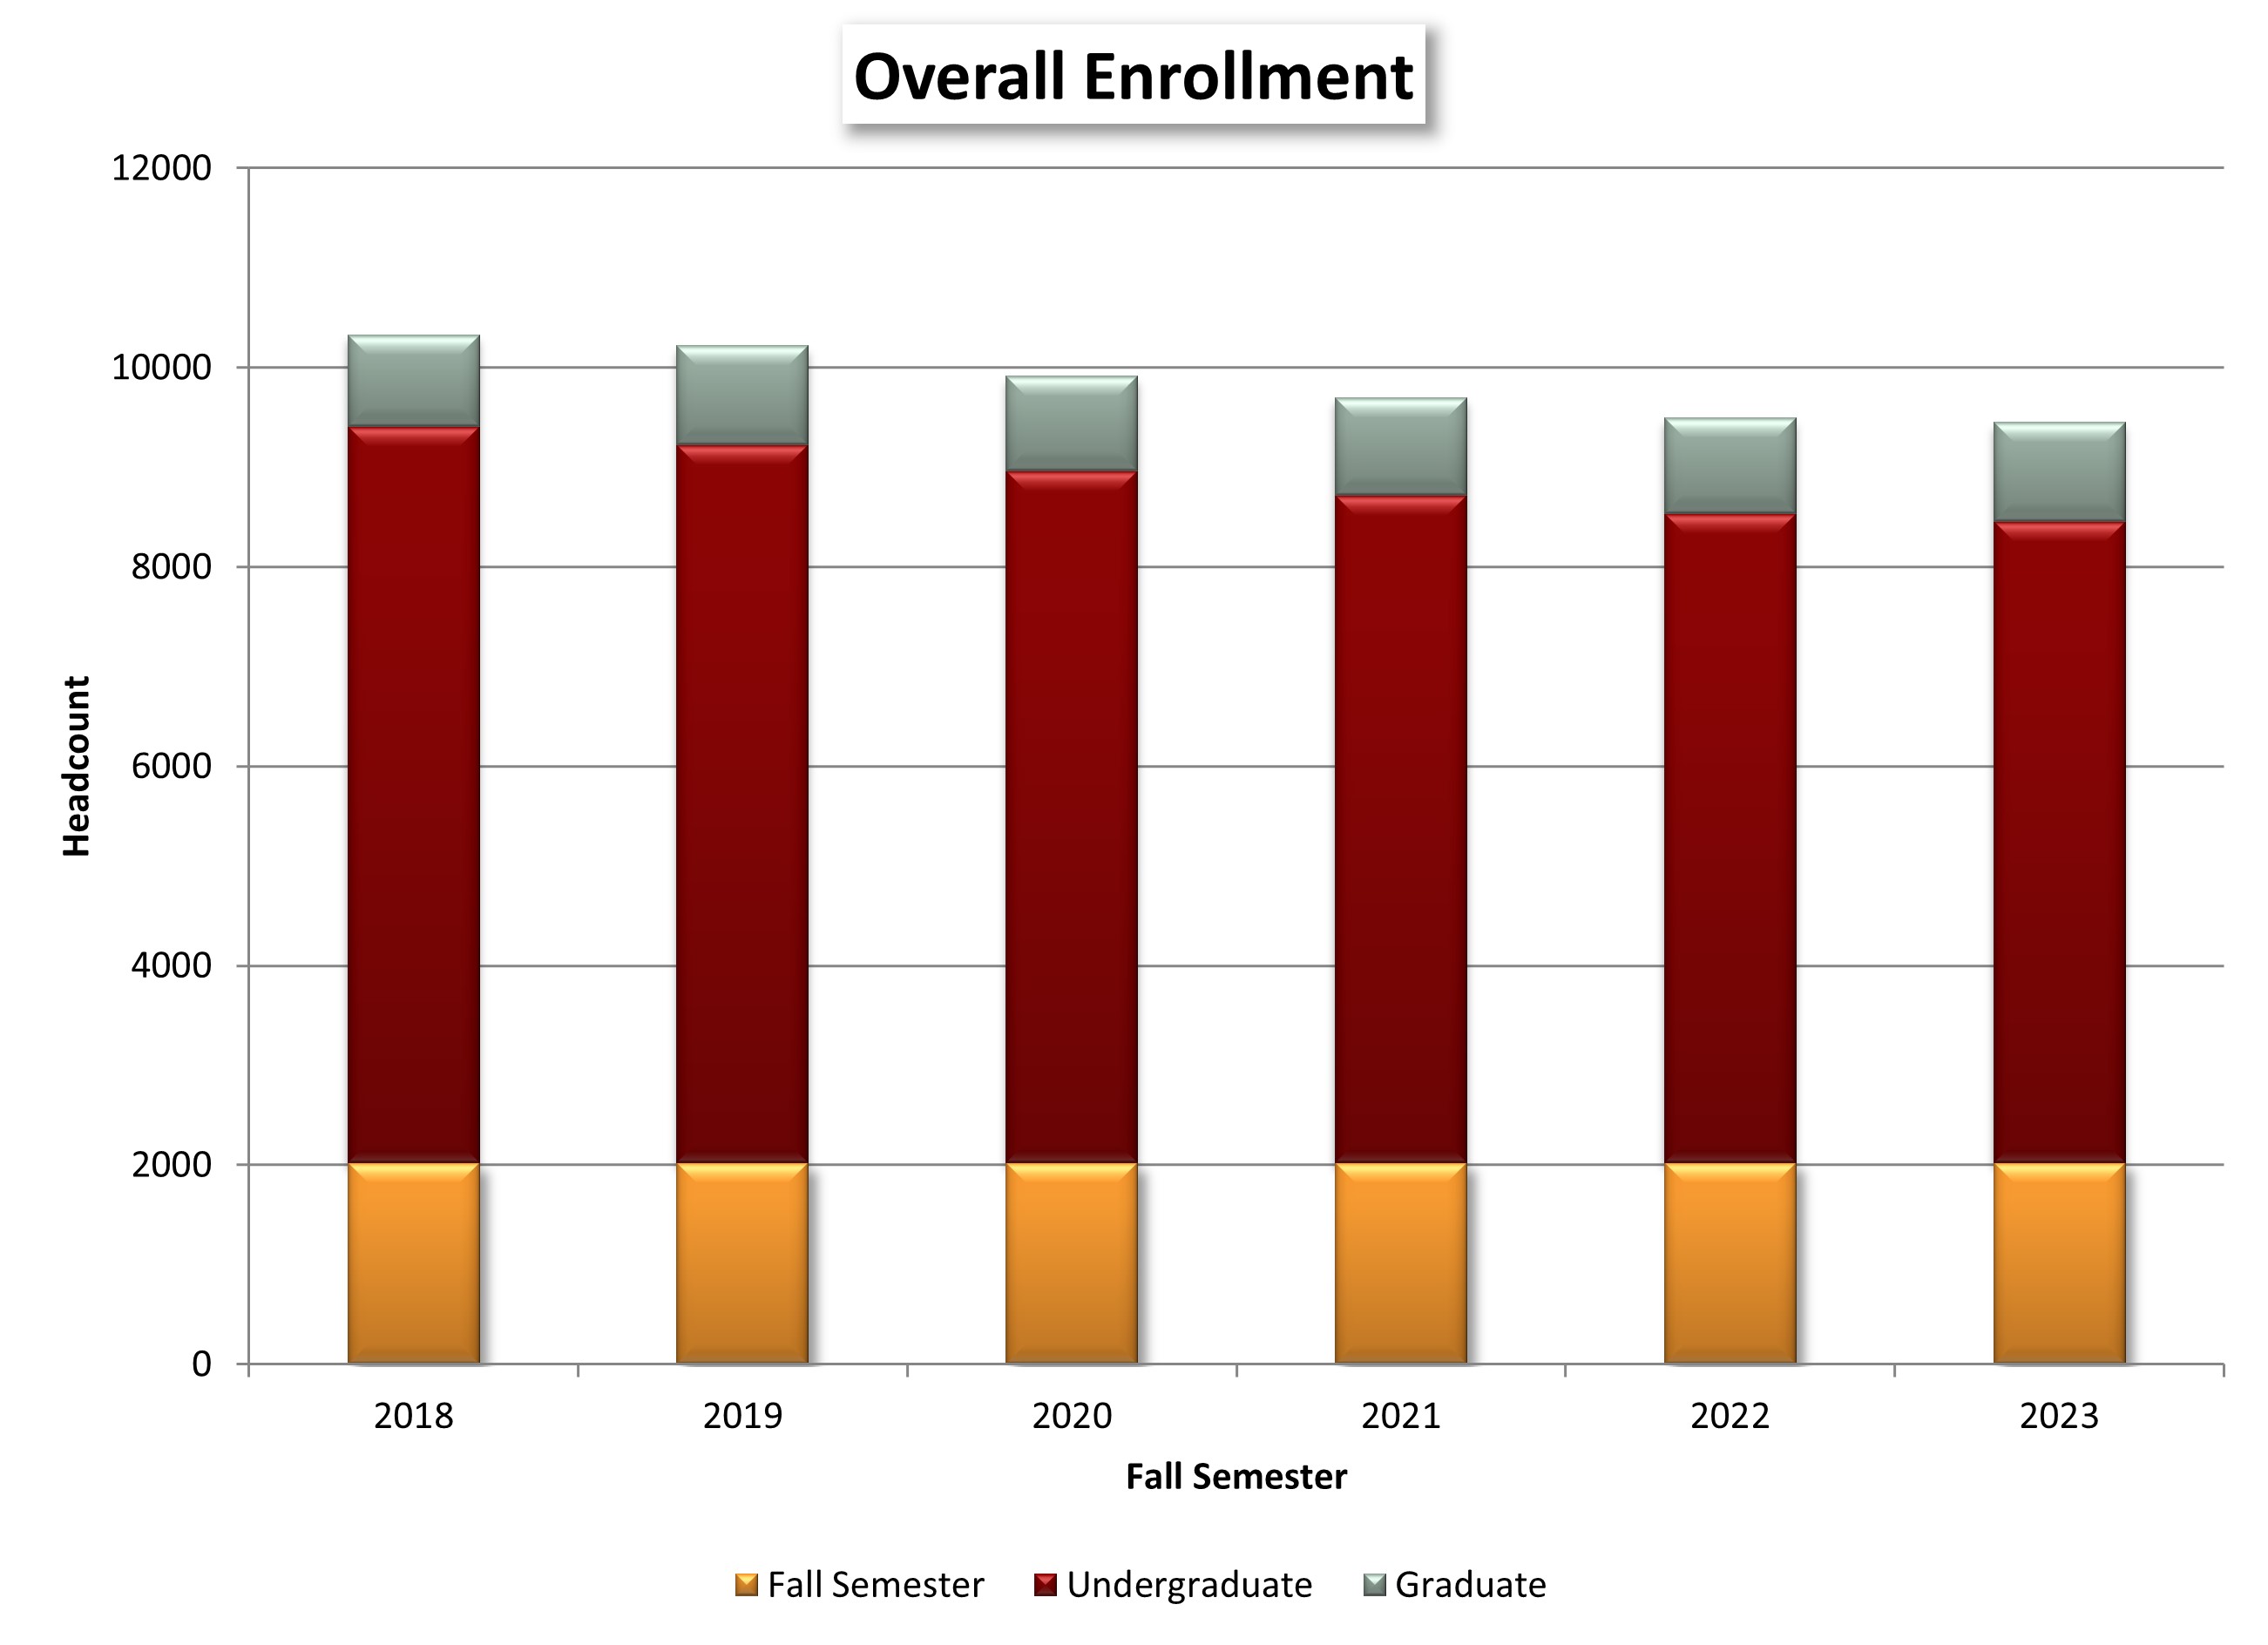 Overall Enrollment chart